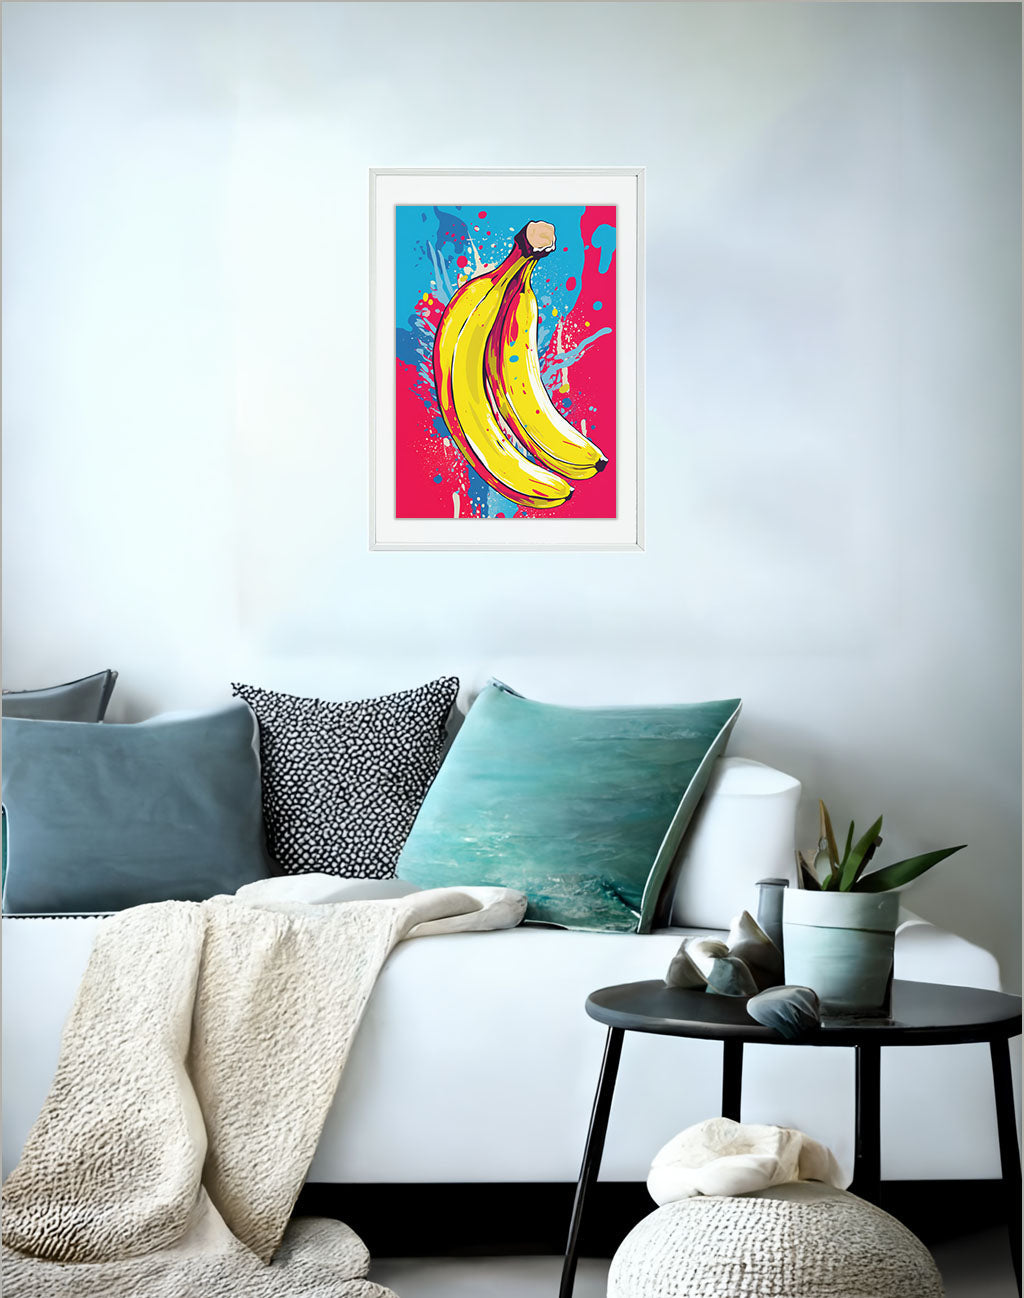 バナナのアートポスター:banana_ac1e / 抽象画_ポップ_キッチン_フルーツと野菜_のポスター画像ソファ近くに設置したイメージ